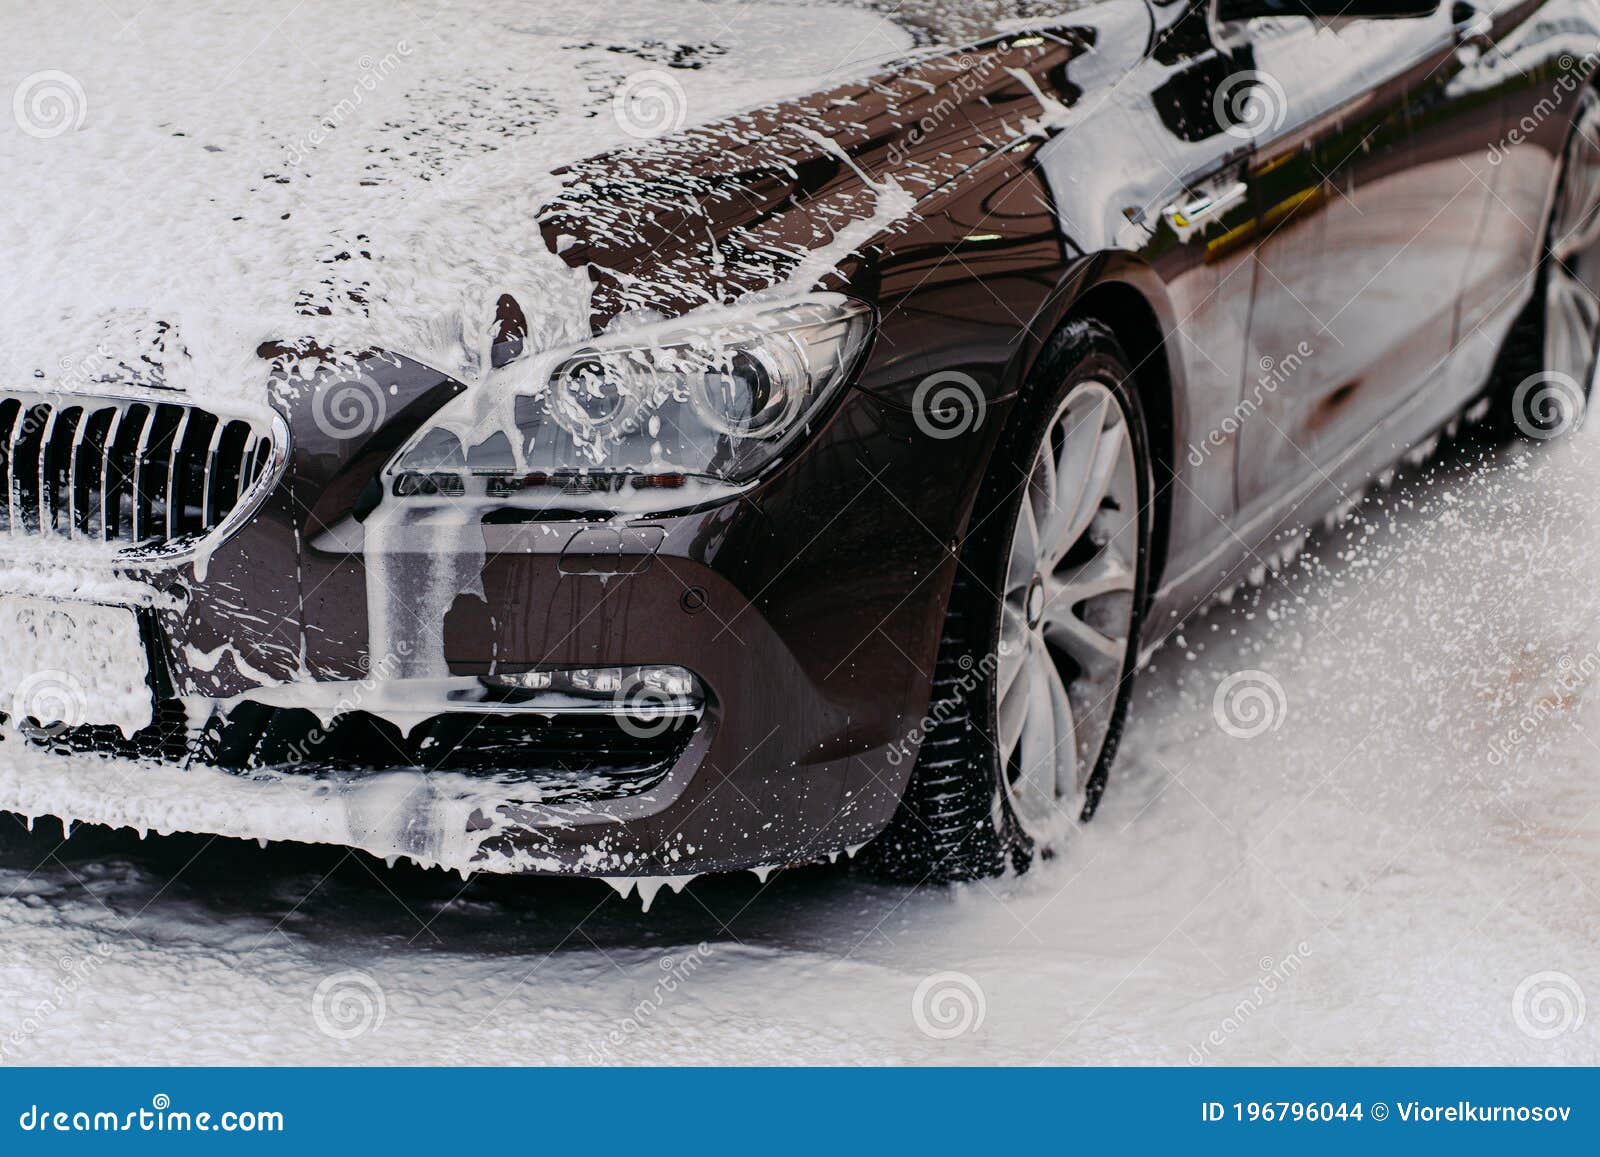 豪华红车车轮在户外自用洗车中被清洁肥皂泡沫的裁切图像 库存图片. 图片 包括有 一个, 敞篷, 男人, 手工 - 191557015